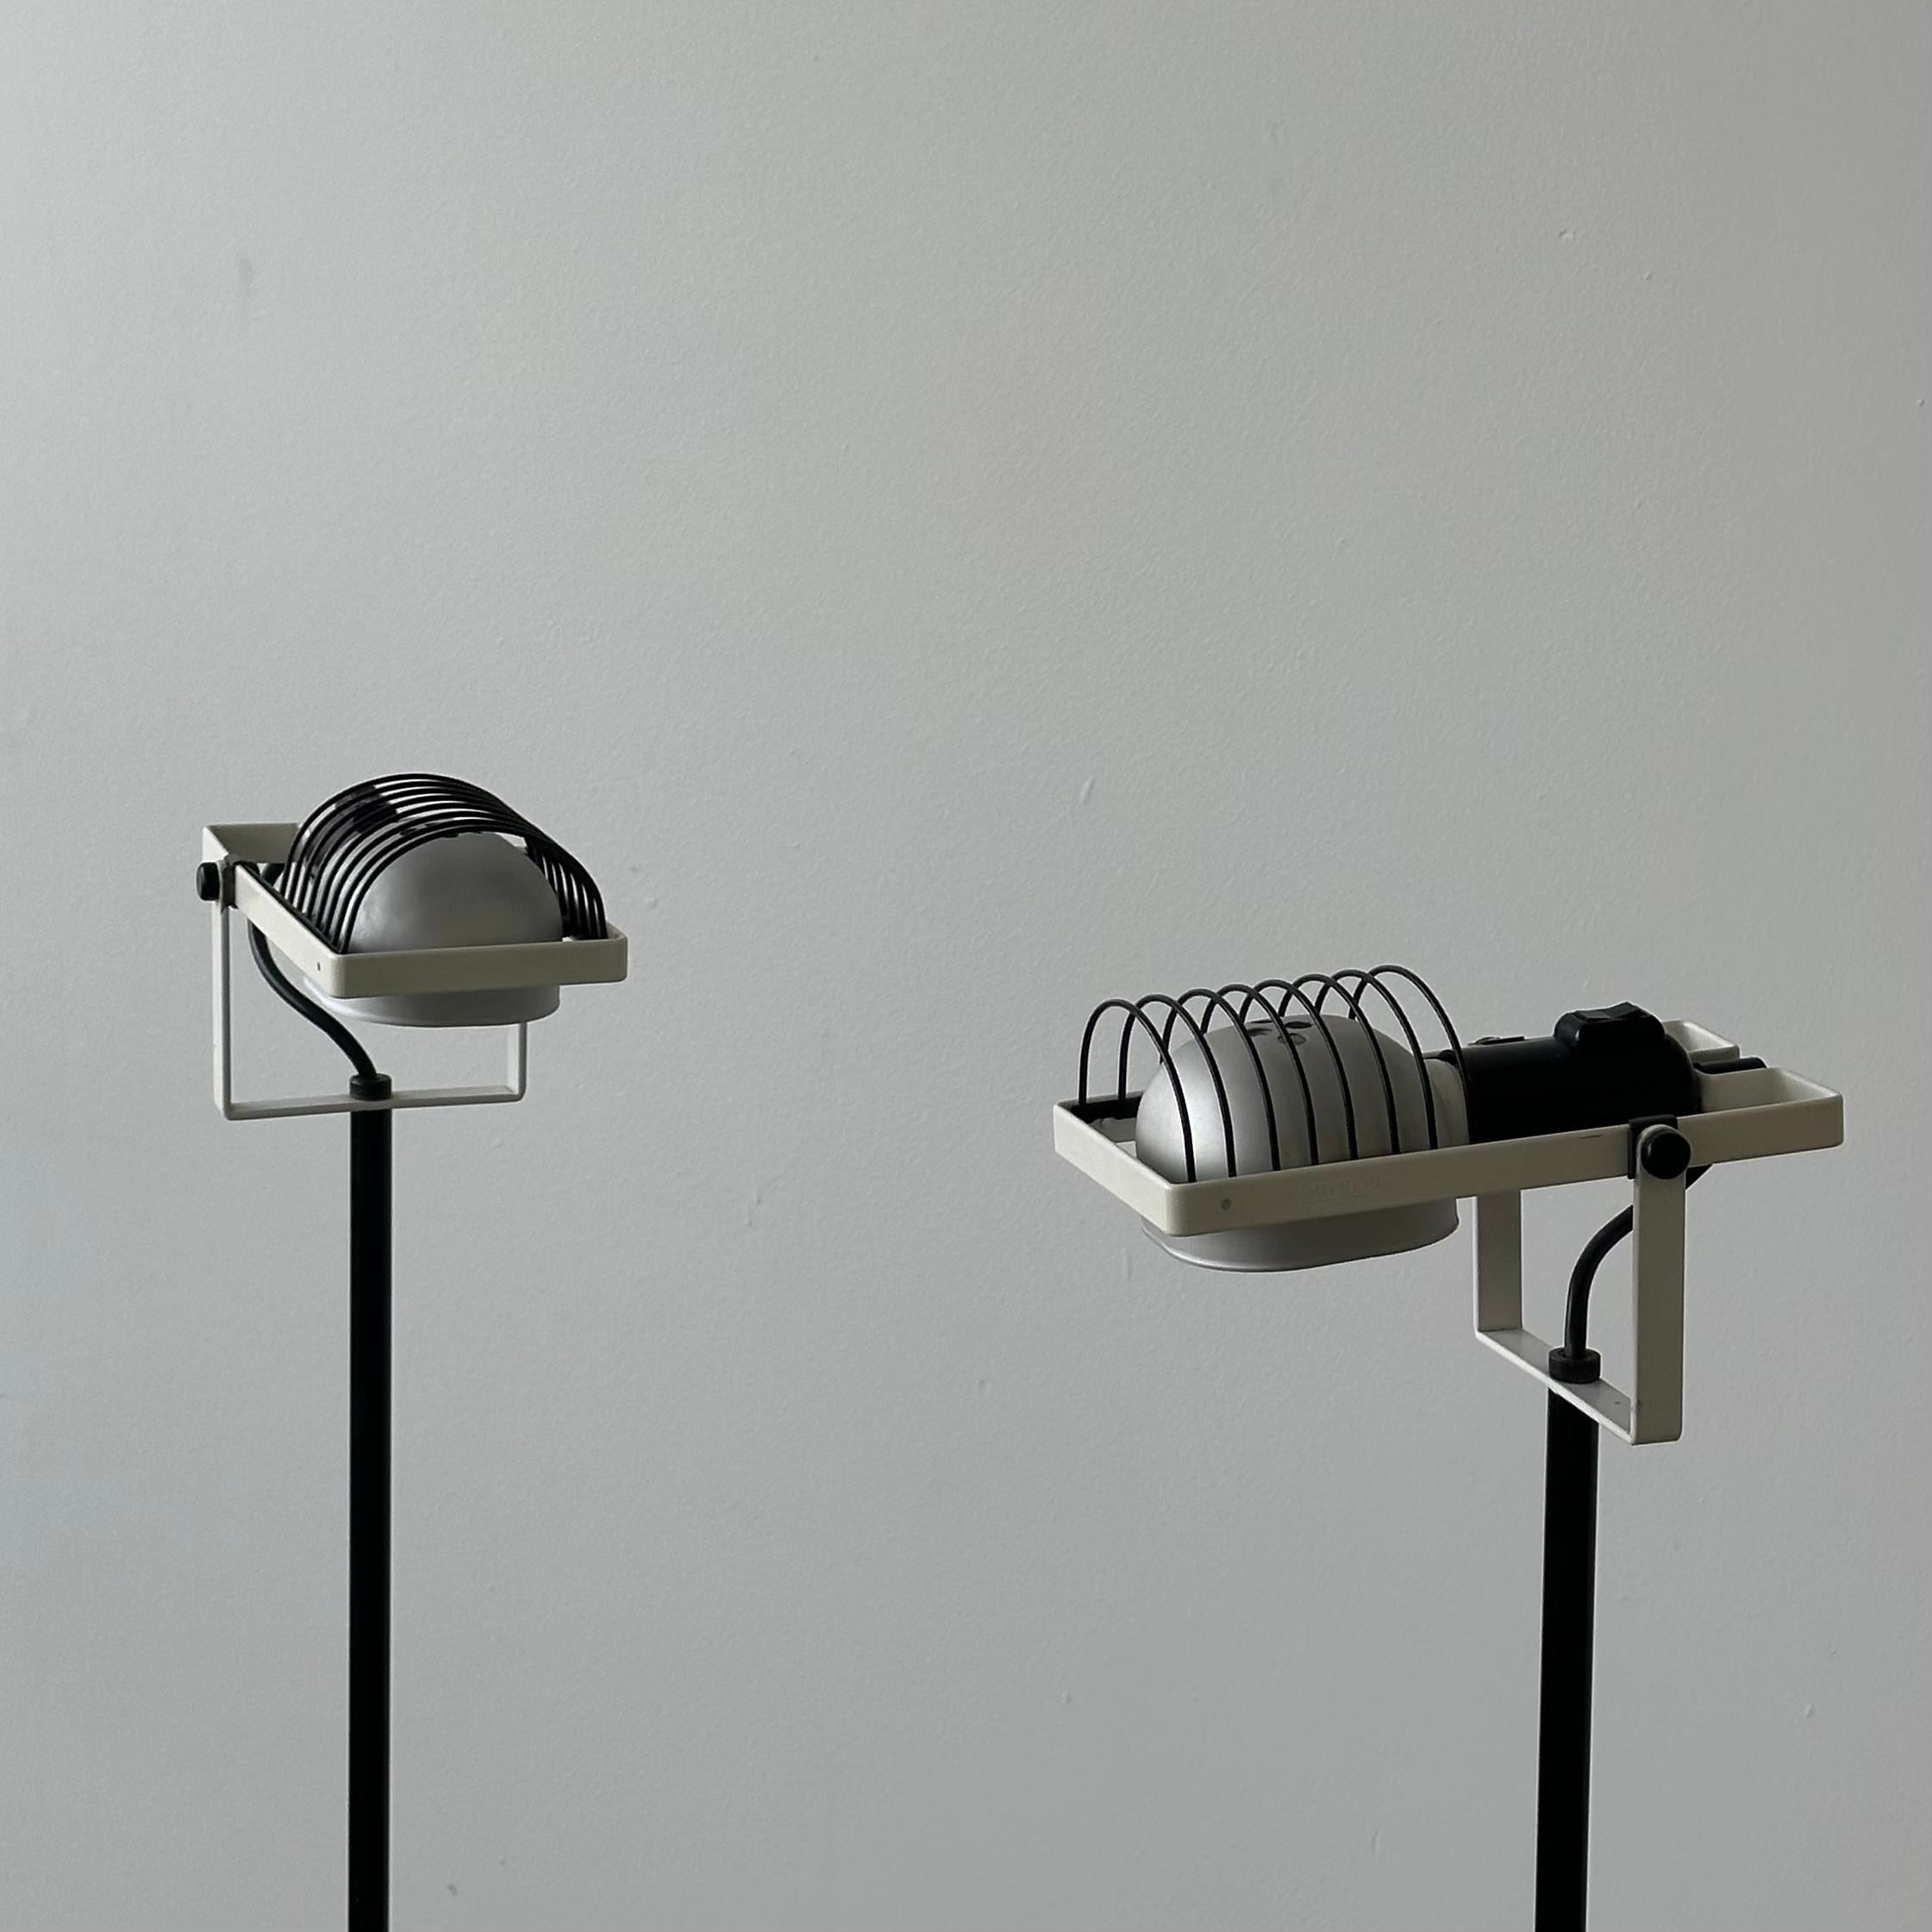 Italian Ernesto Gismondi Floor Lamps for Artemide, a pair For Sale